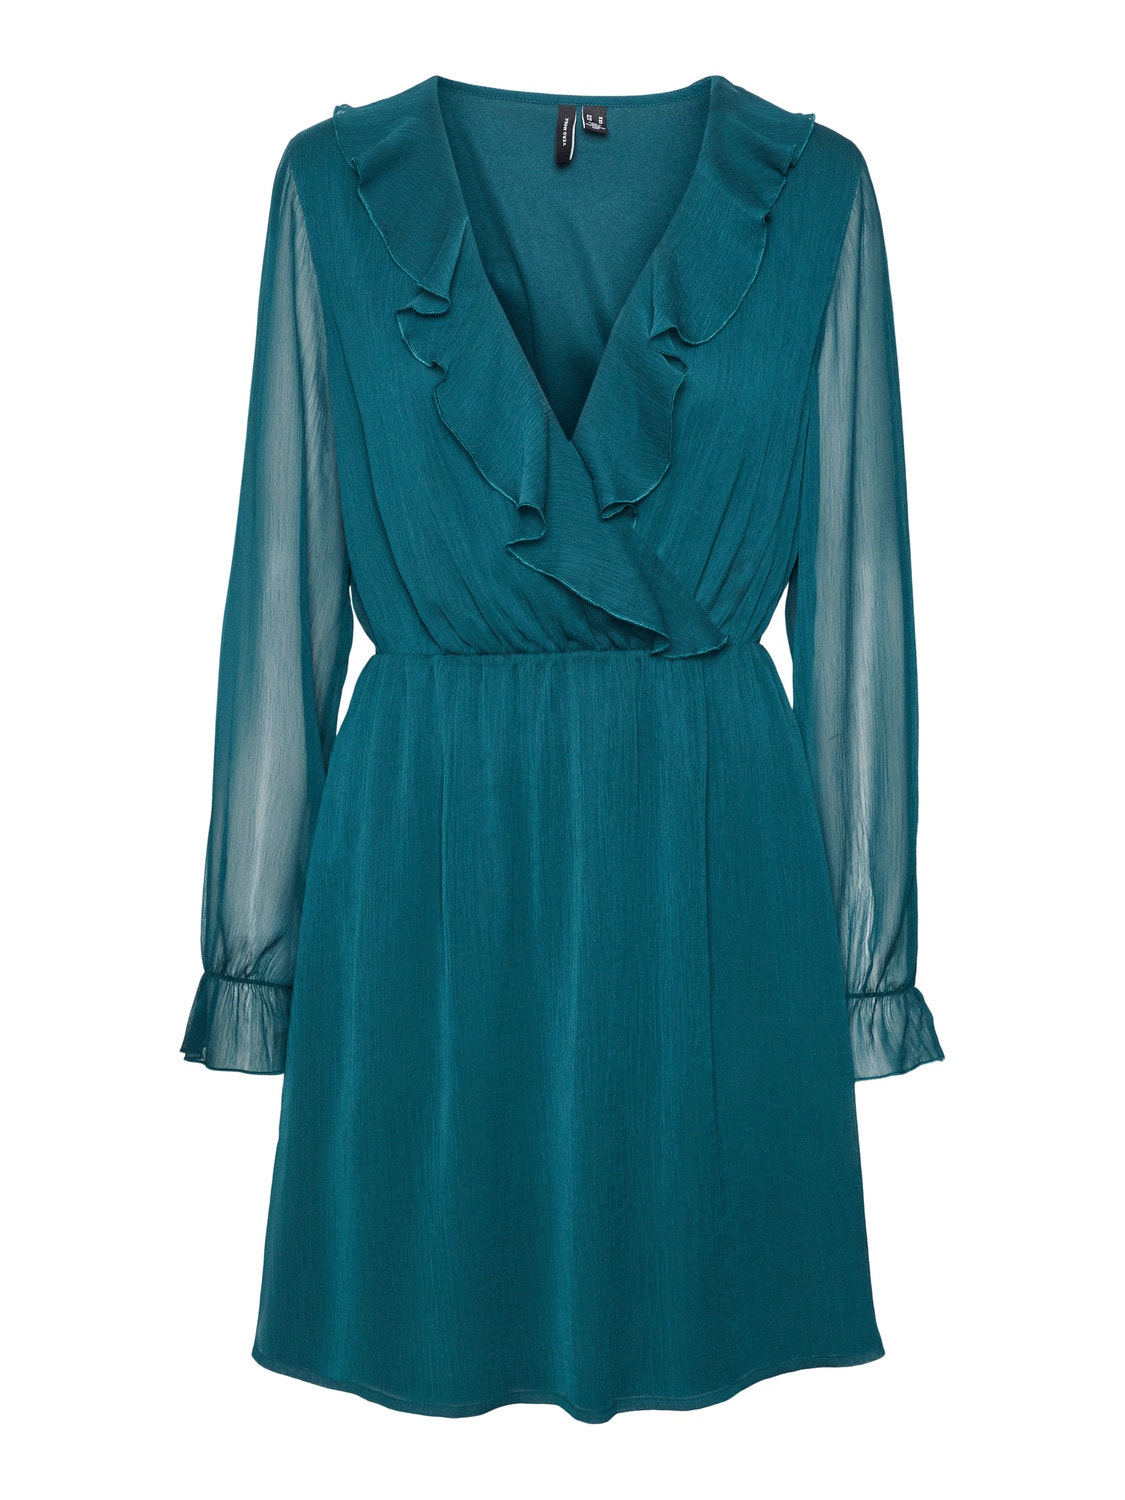 Dark Vero Moda® | Turquoise dress | VMHILDA Short